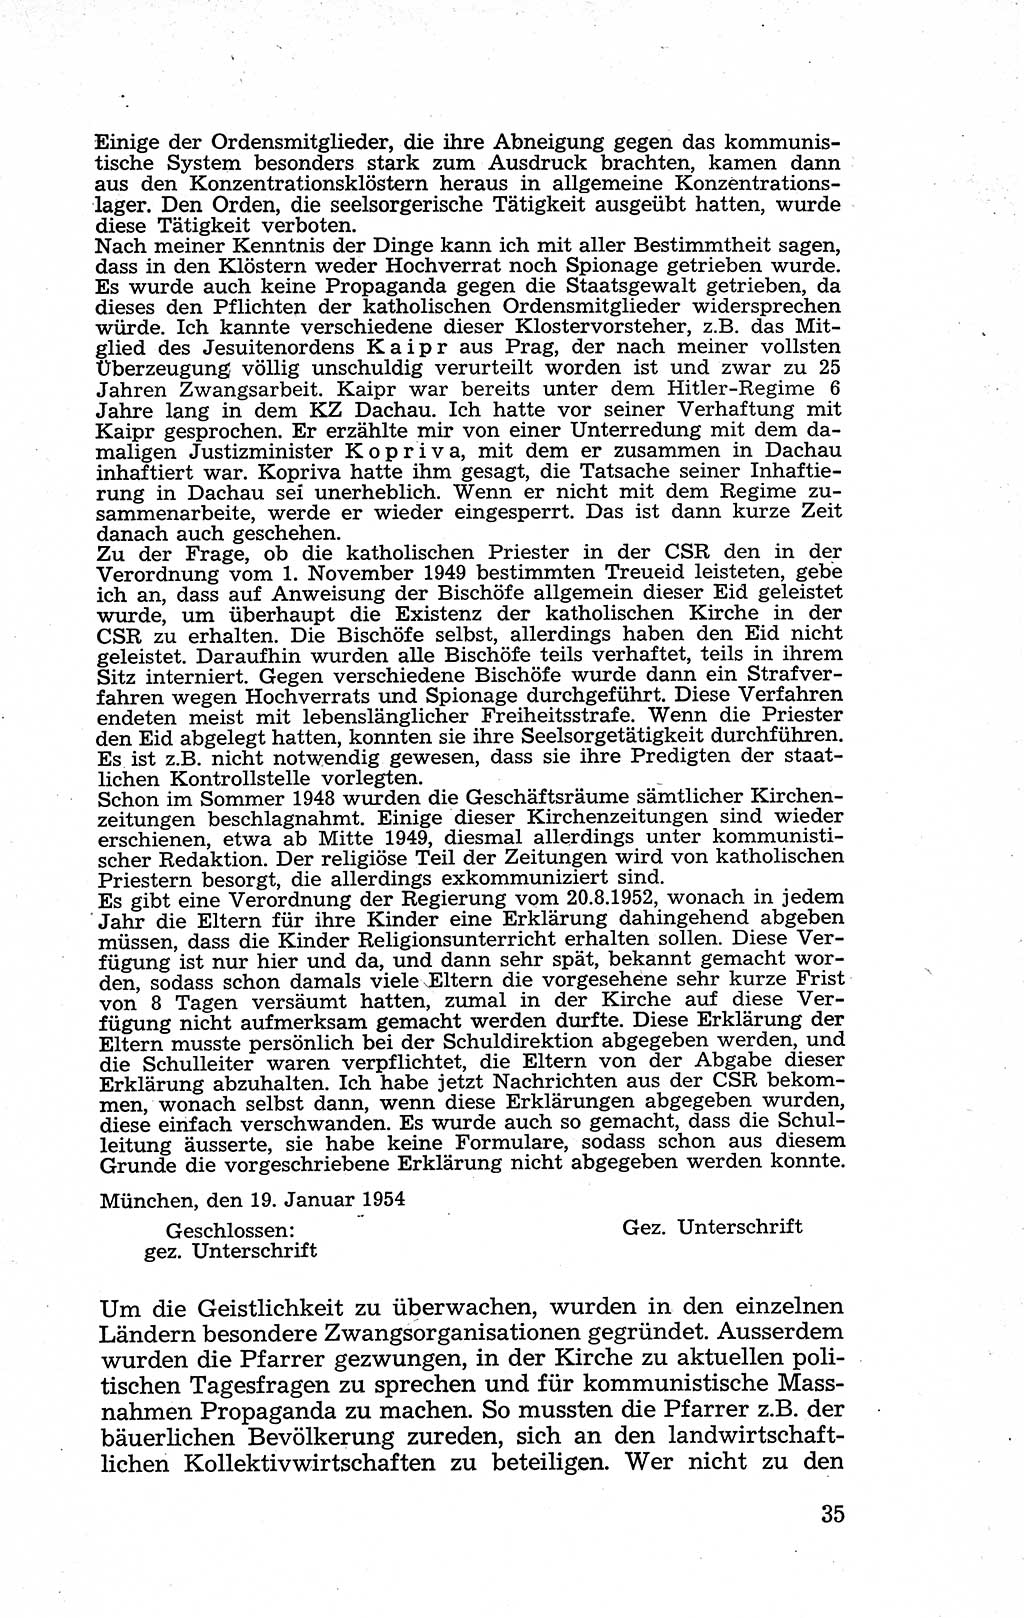 Recht in Fesseln, Dokumente, Internationale Juristen-Kommission [Bundesrepublik Deutschland (BRD)] 1955, Seite 35 (R. Dok. IJK BRD 1955, S. 35)